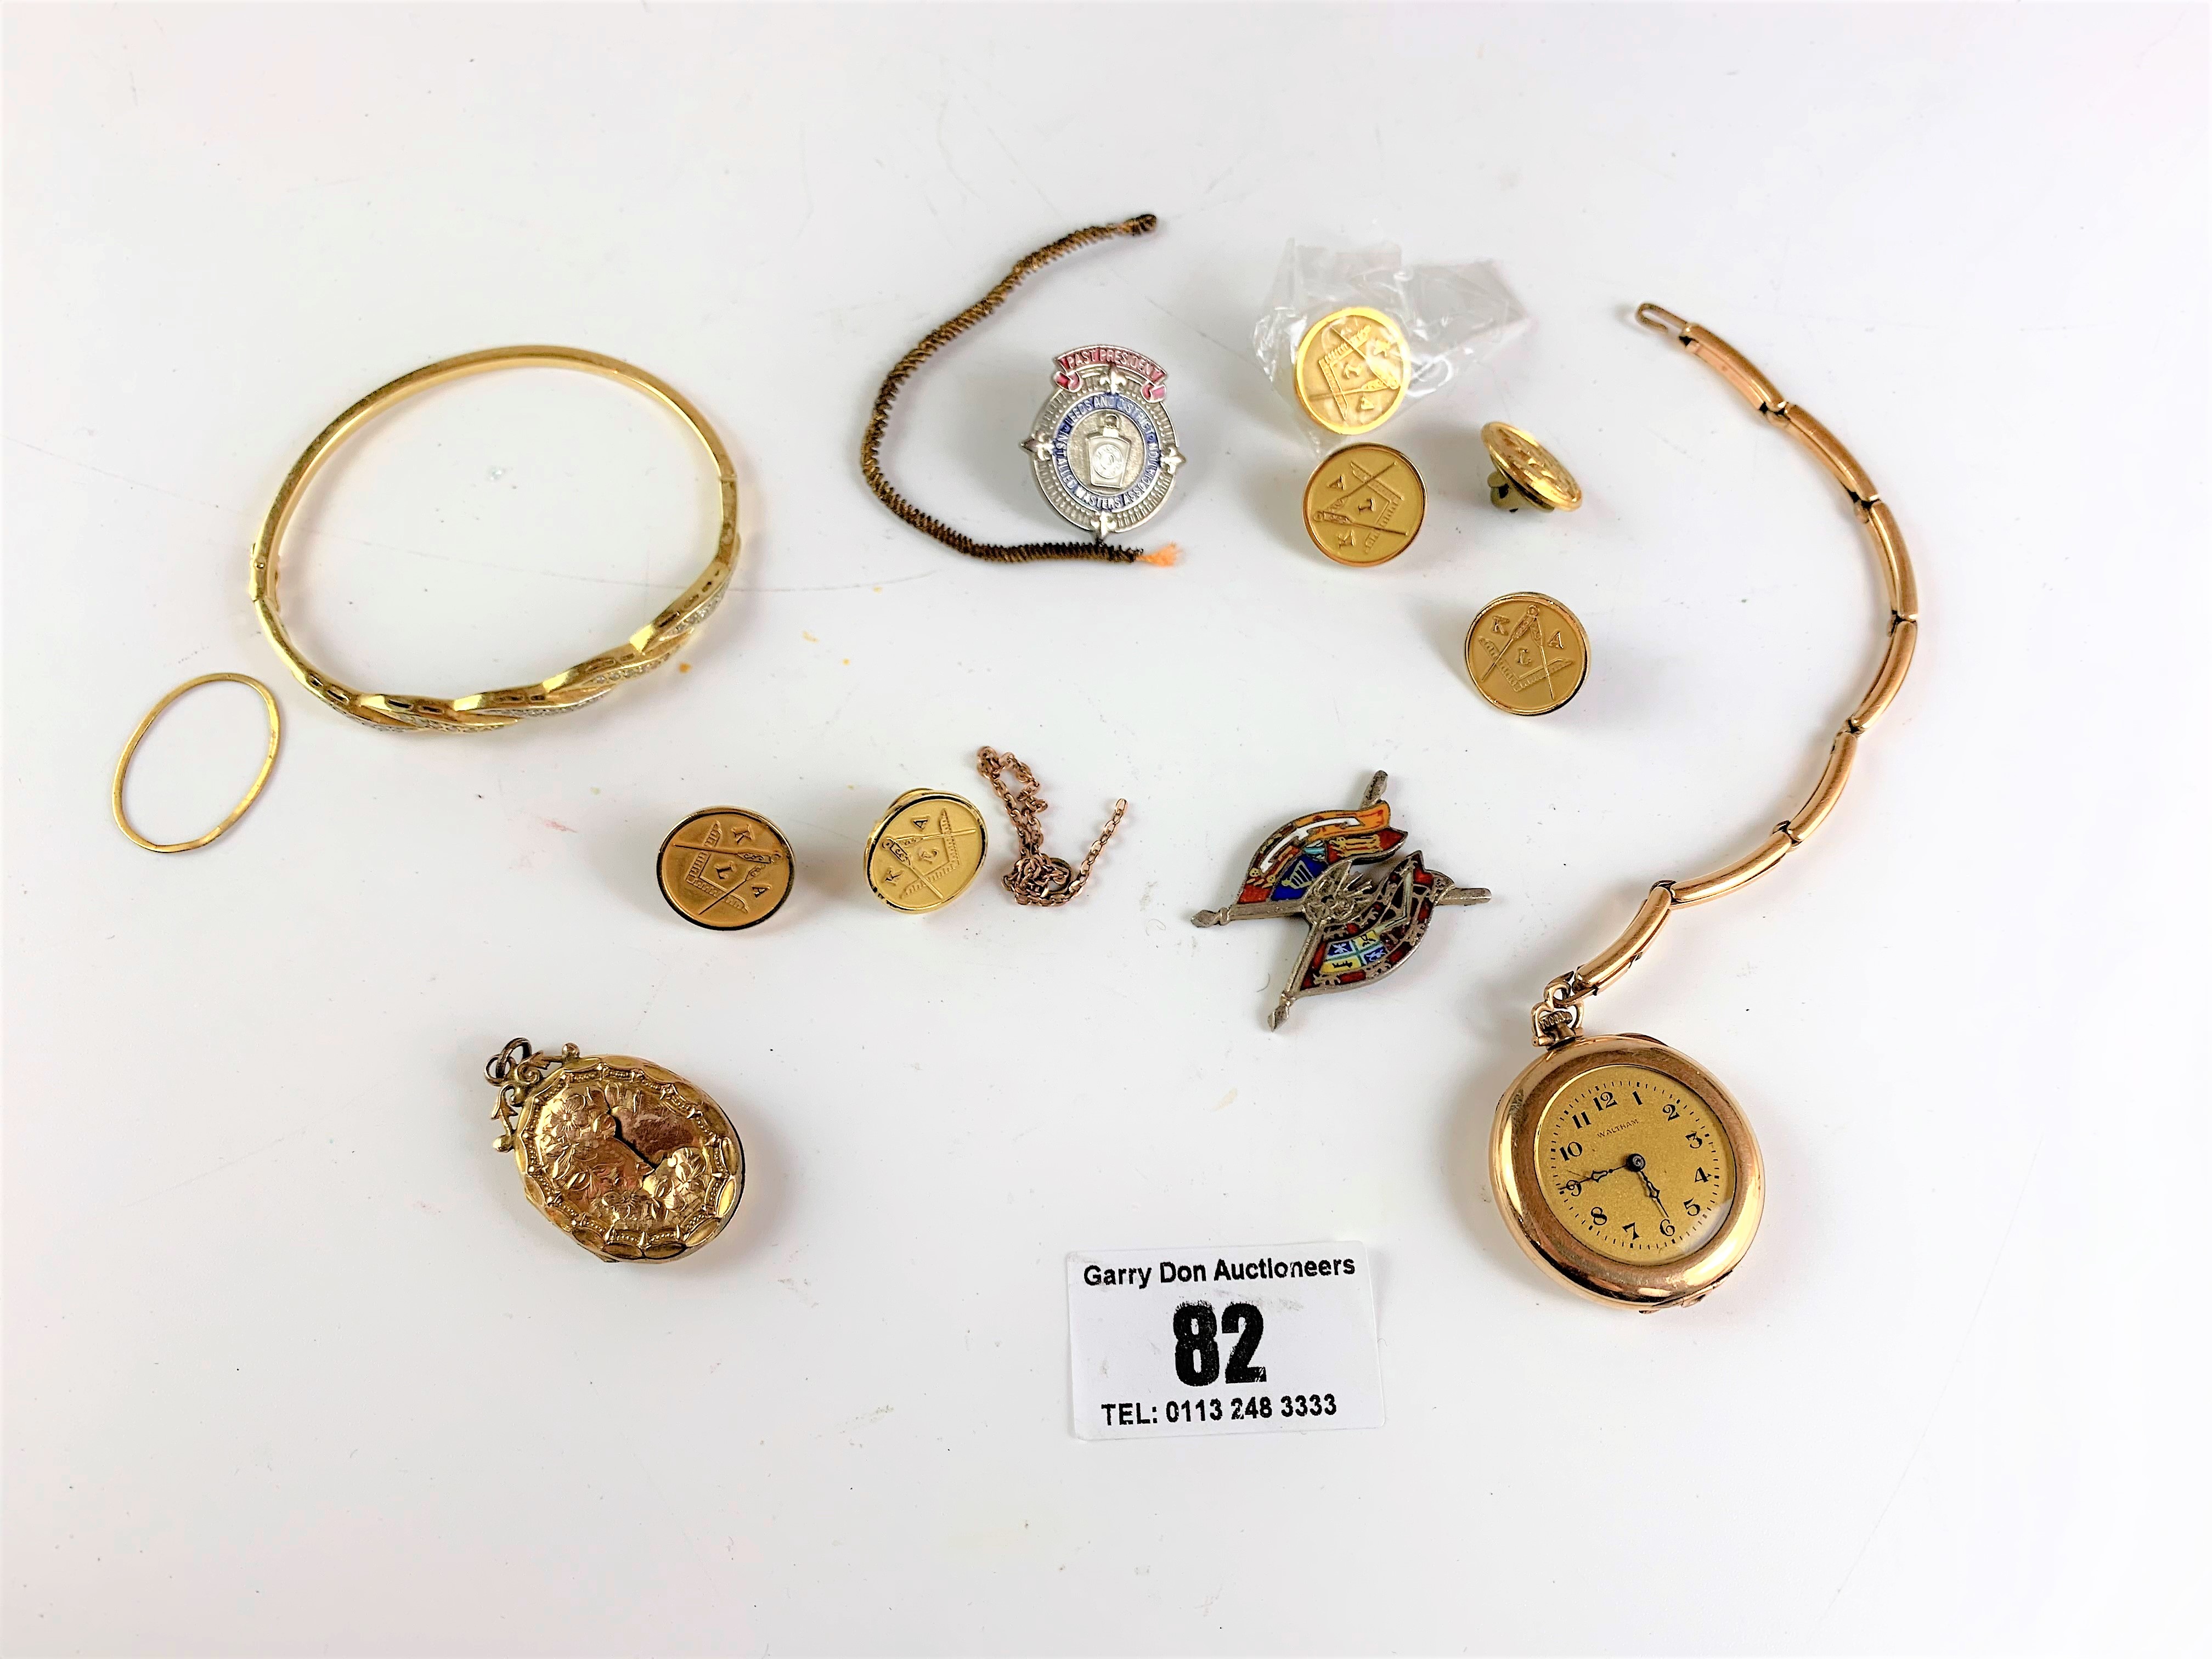 Bag of assorted dress jewellery including bracelets, pendants, badges etc.